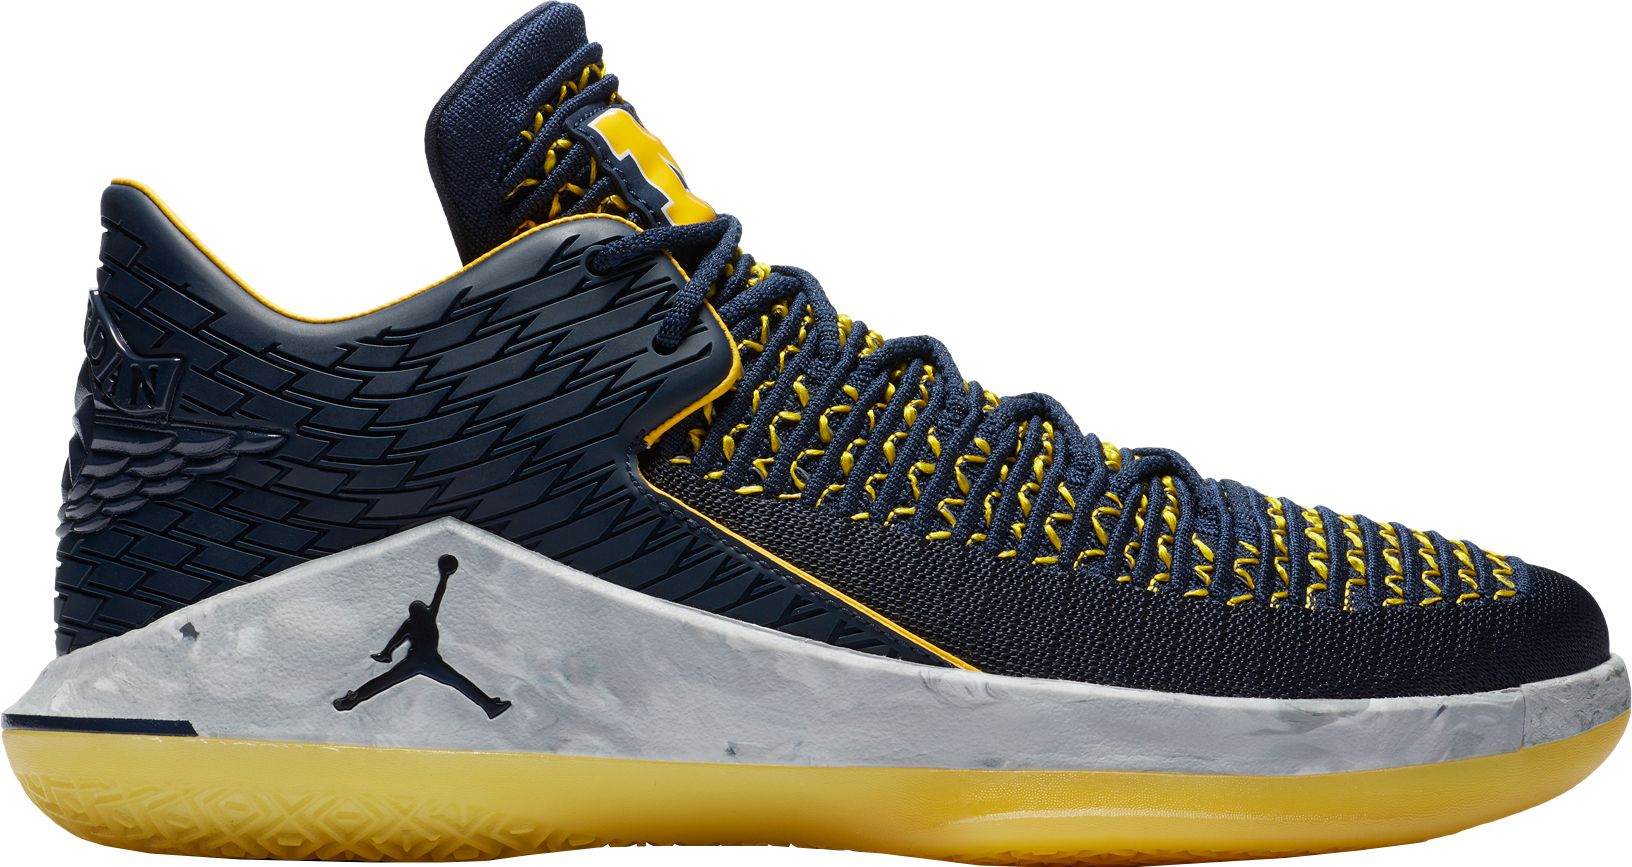 Jordan Basketball Shoes | Best Price Guarantee at DICK'S